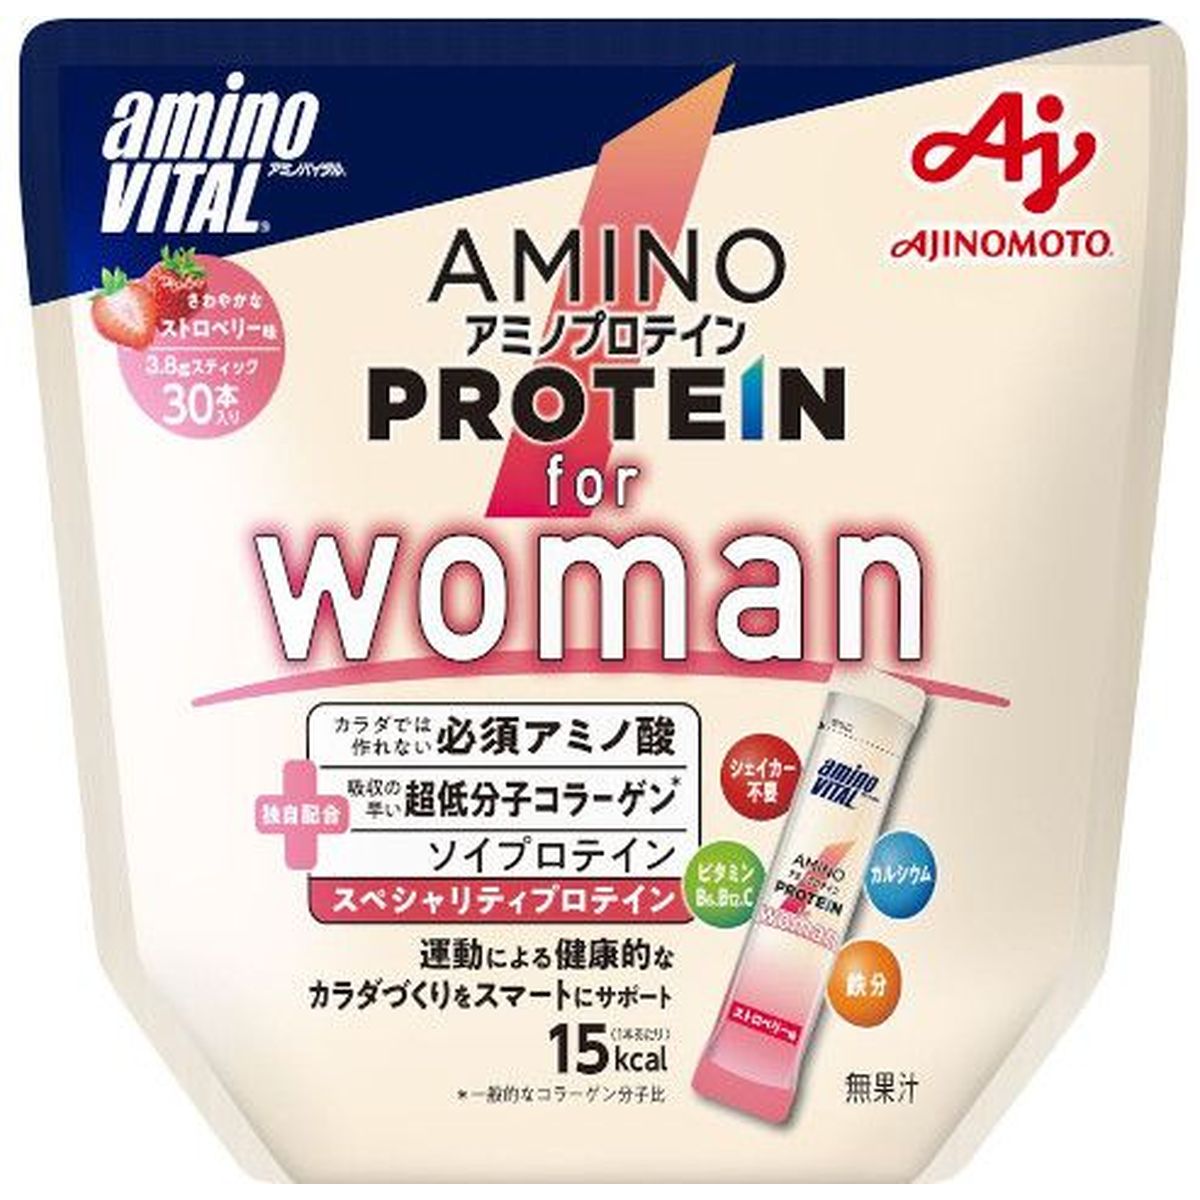 【10個入リ】味ノ素 アミノバイタル アミノプロテインforwoman 3.8X30